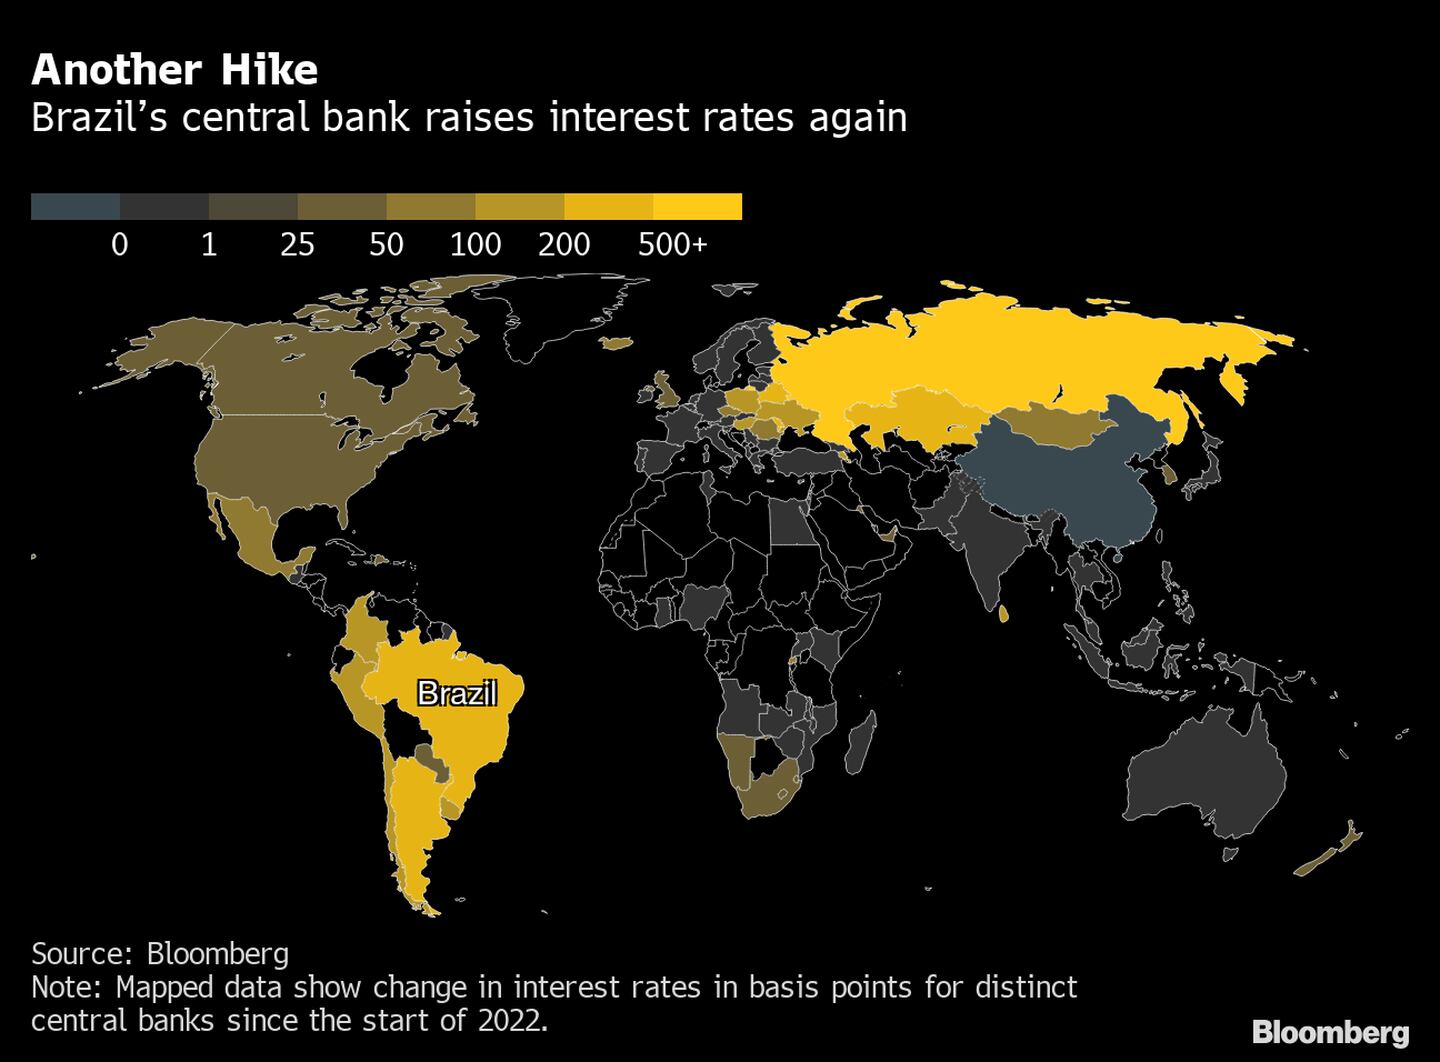 El banco central de Brasil elevó nuevamente su tasa de interés. dfd